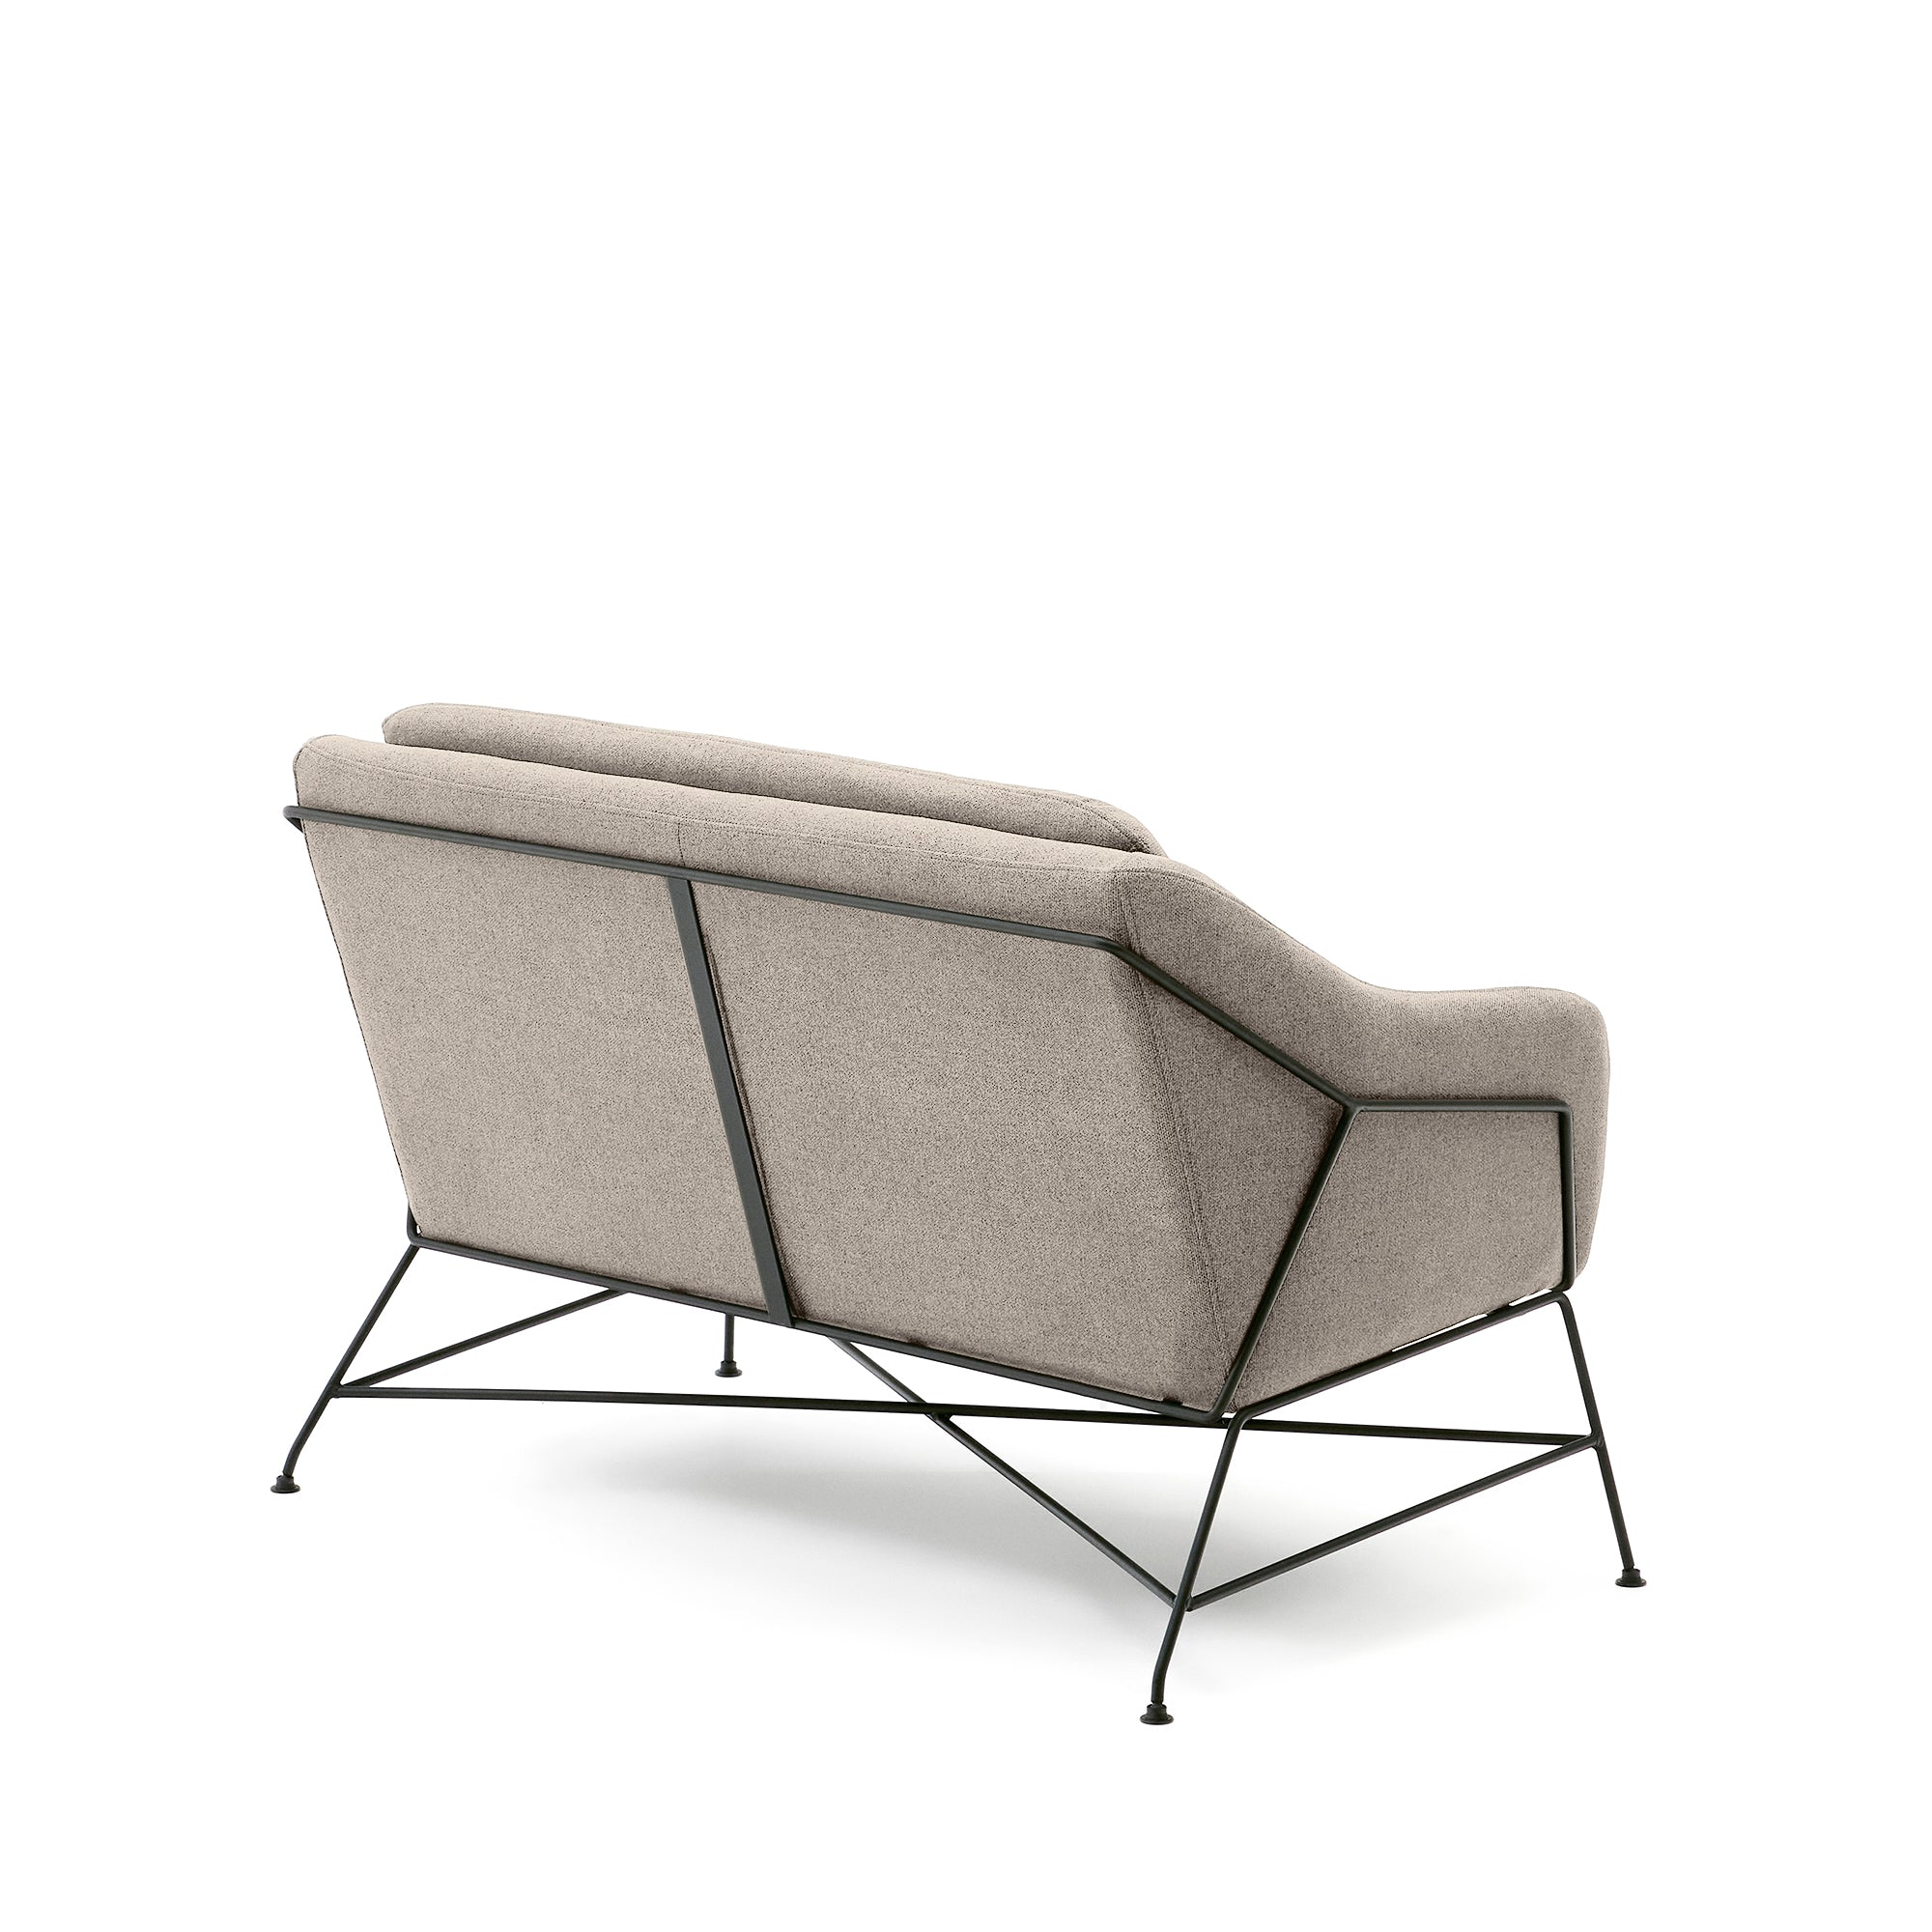 Brida 2 üléses kanapé bézs színben, acél lábakkal, fekete kivitelben, 128 cm